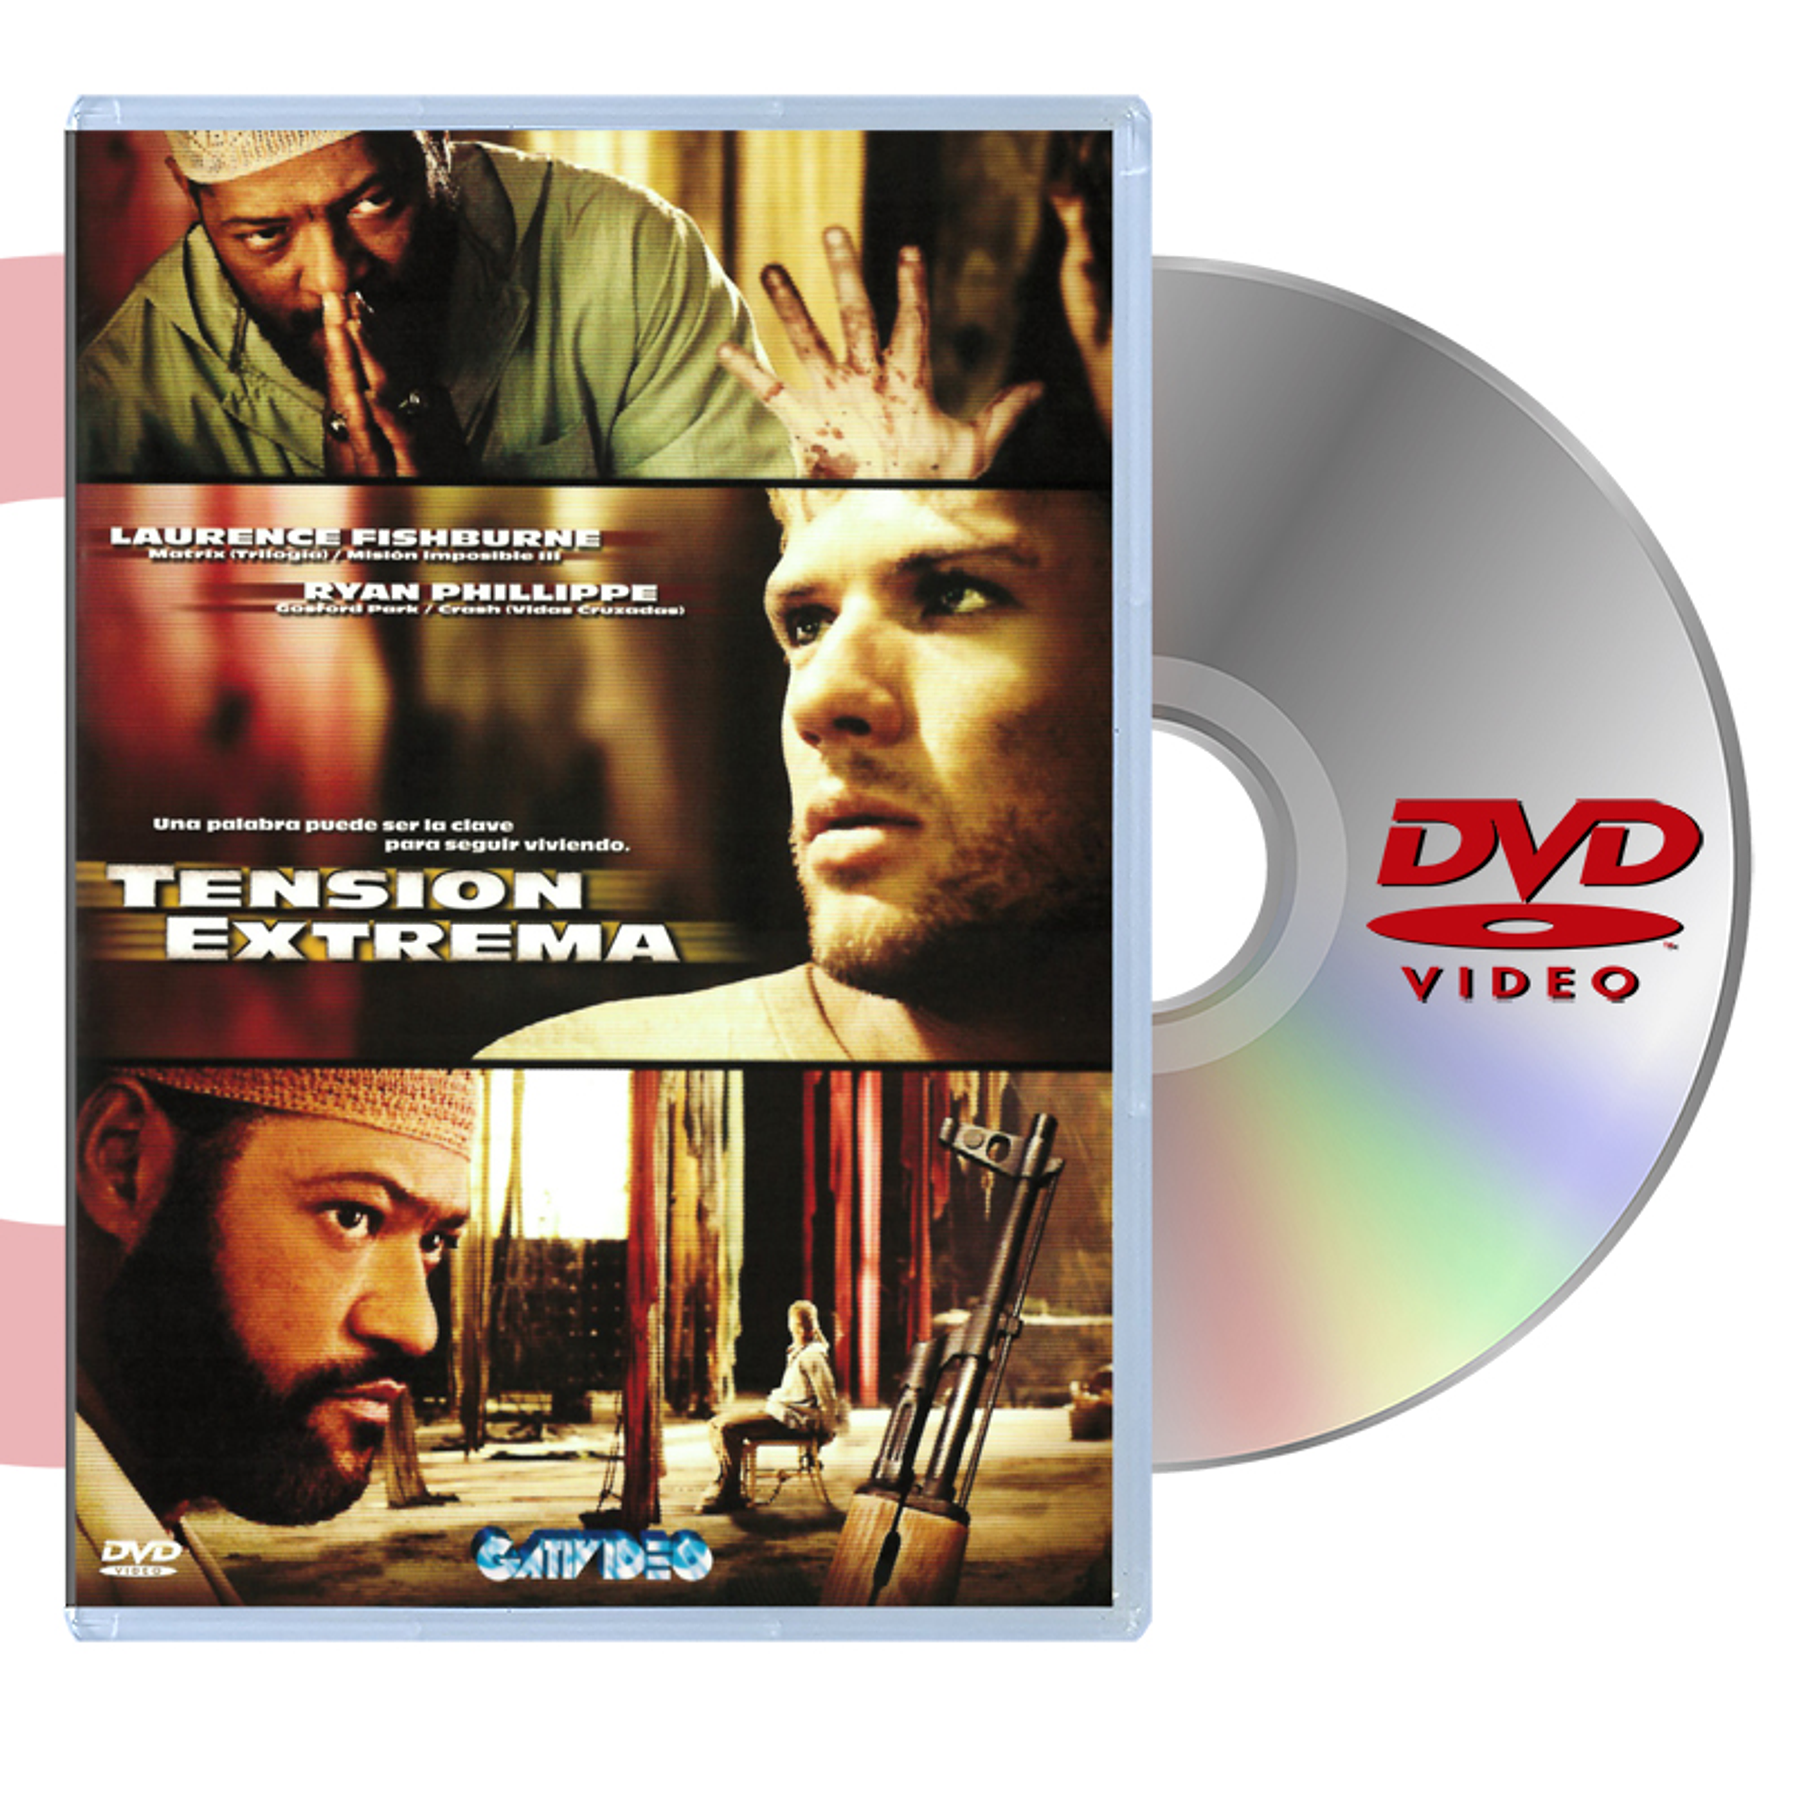 DVD TENSIÓN EXTREMA